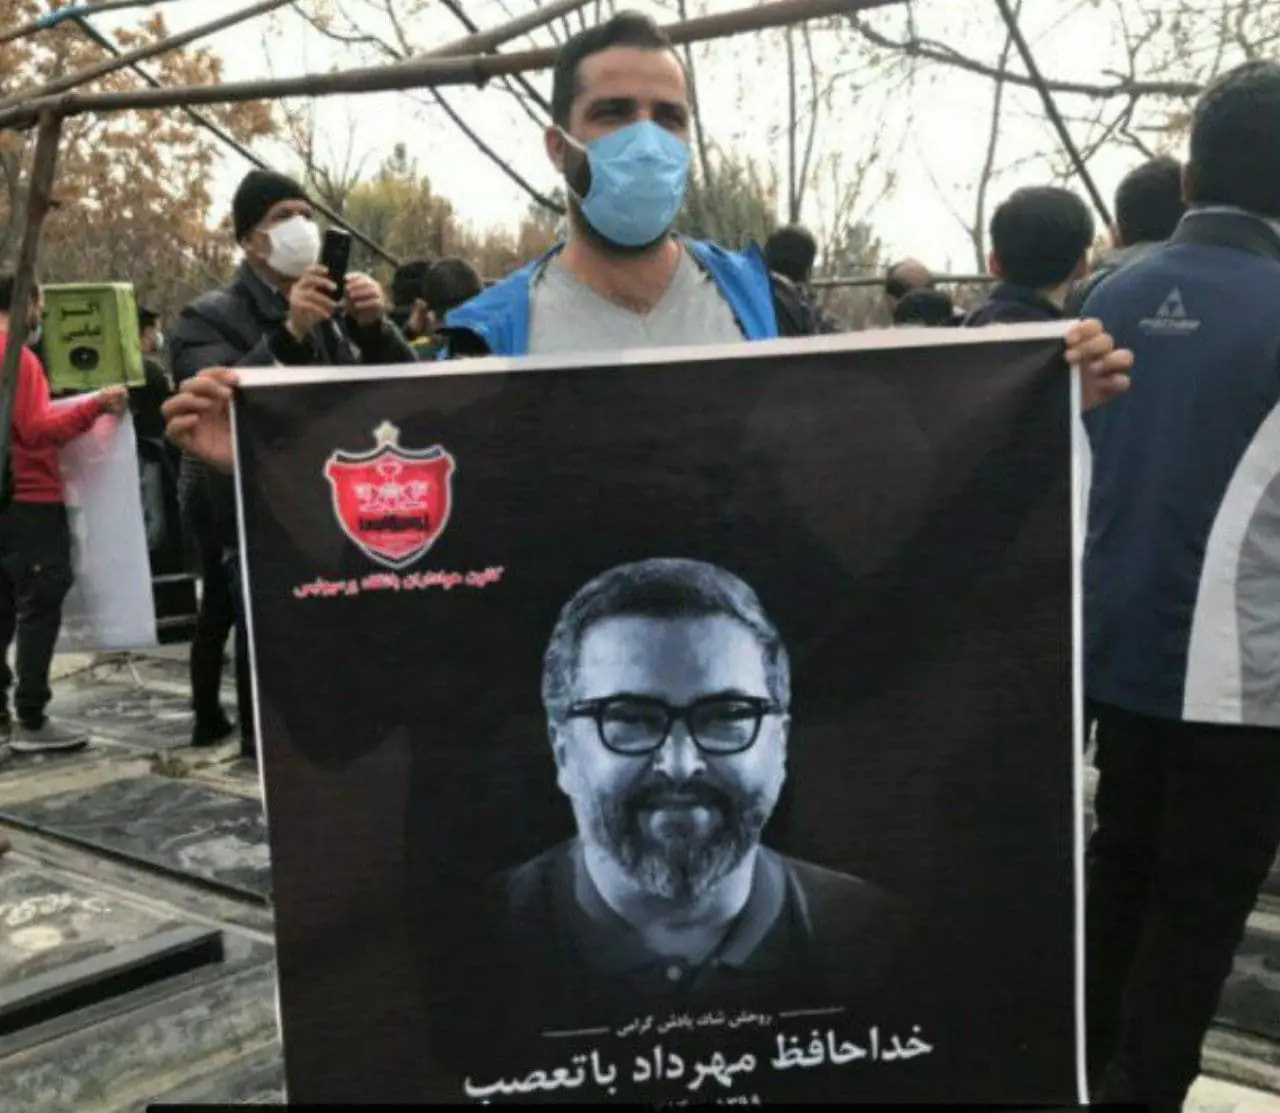 ادای احترام به مهرداد میناوند در هفته سیزدهم لیگ برتر ایران